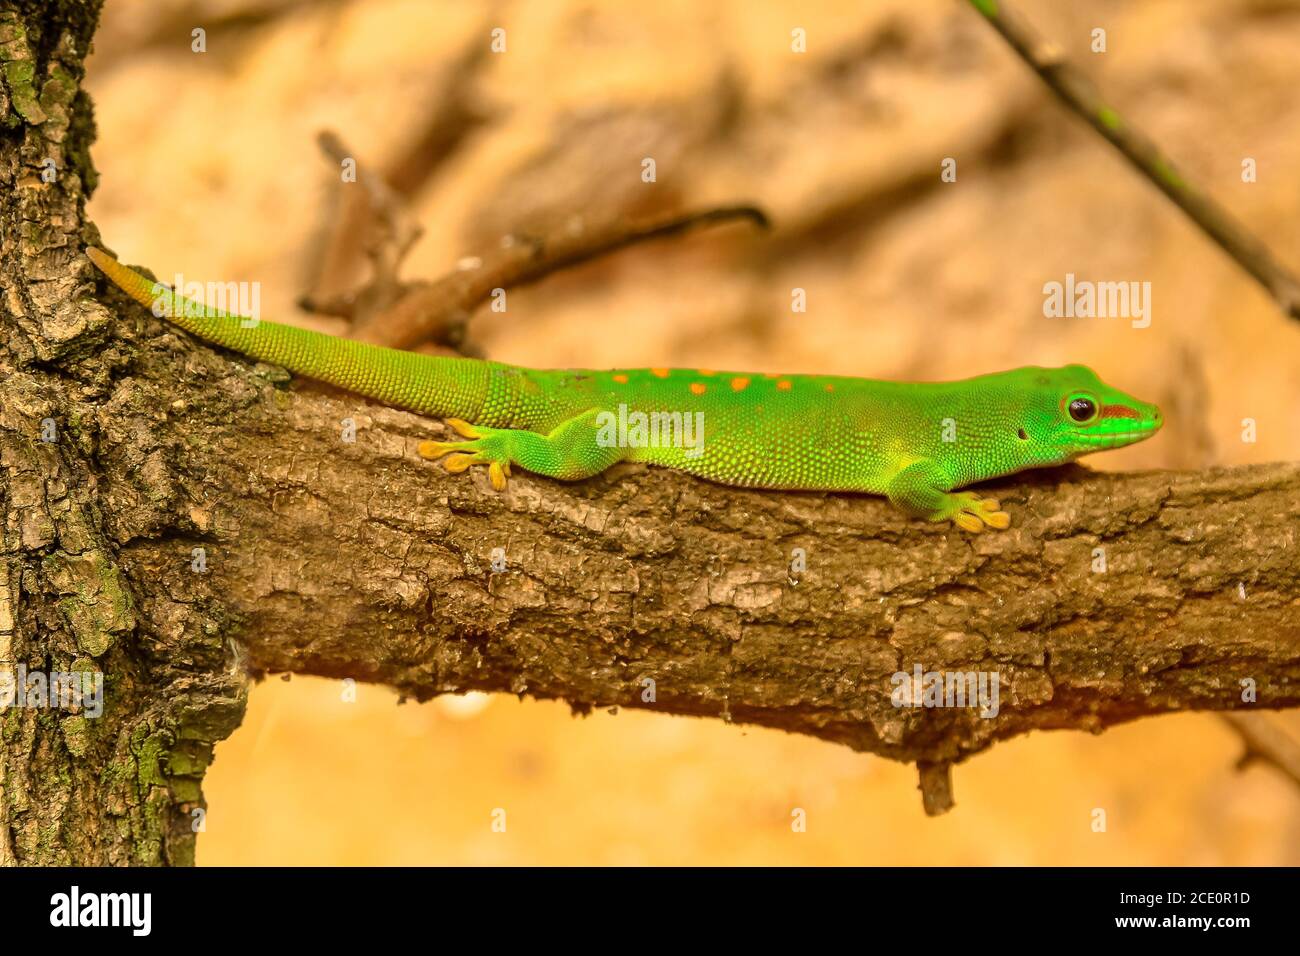 Nahaufnahme eines grünen Geckos, Phelsuma madagascariensis-Art, auch Madagaskar-Taggecko genannt. Sie lebt in den Regenwäldern Madagaskars. Auf einem Baum ruhen Stockfoto